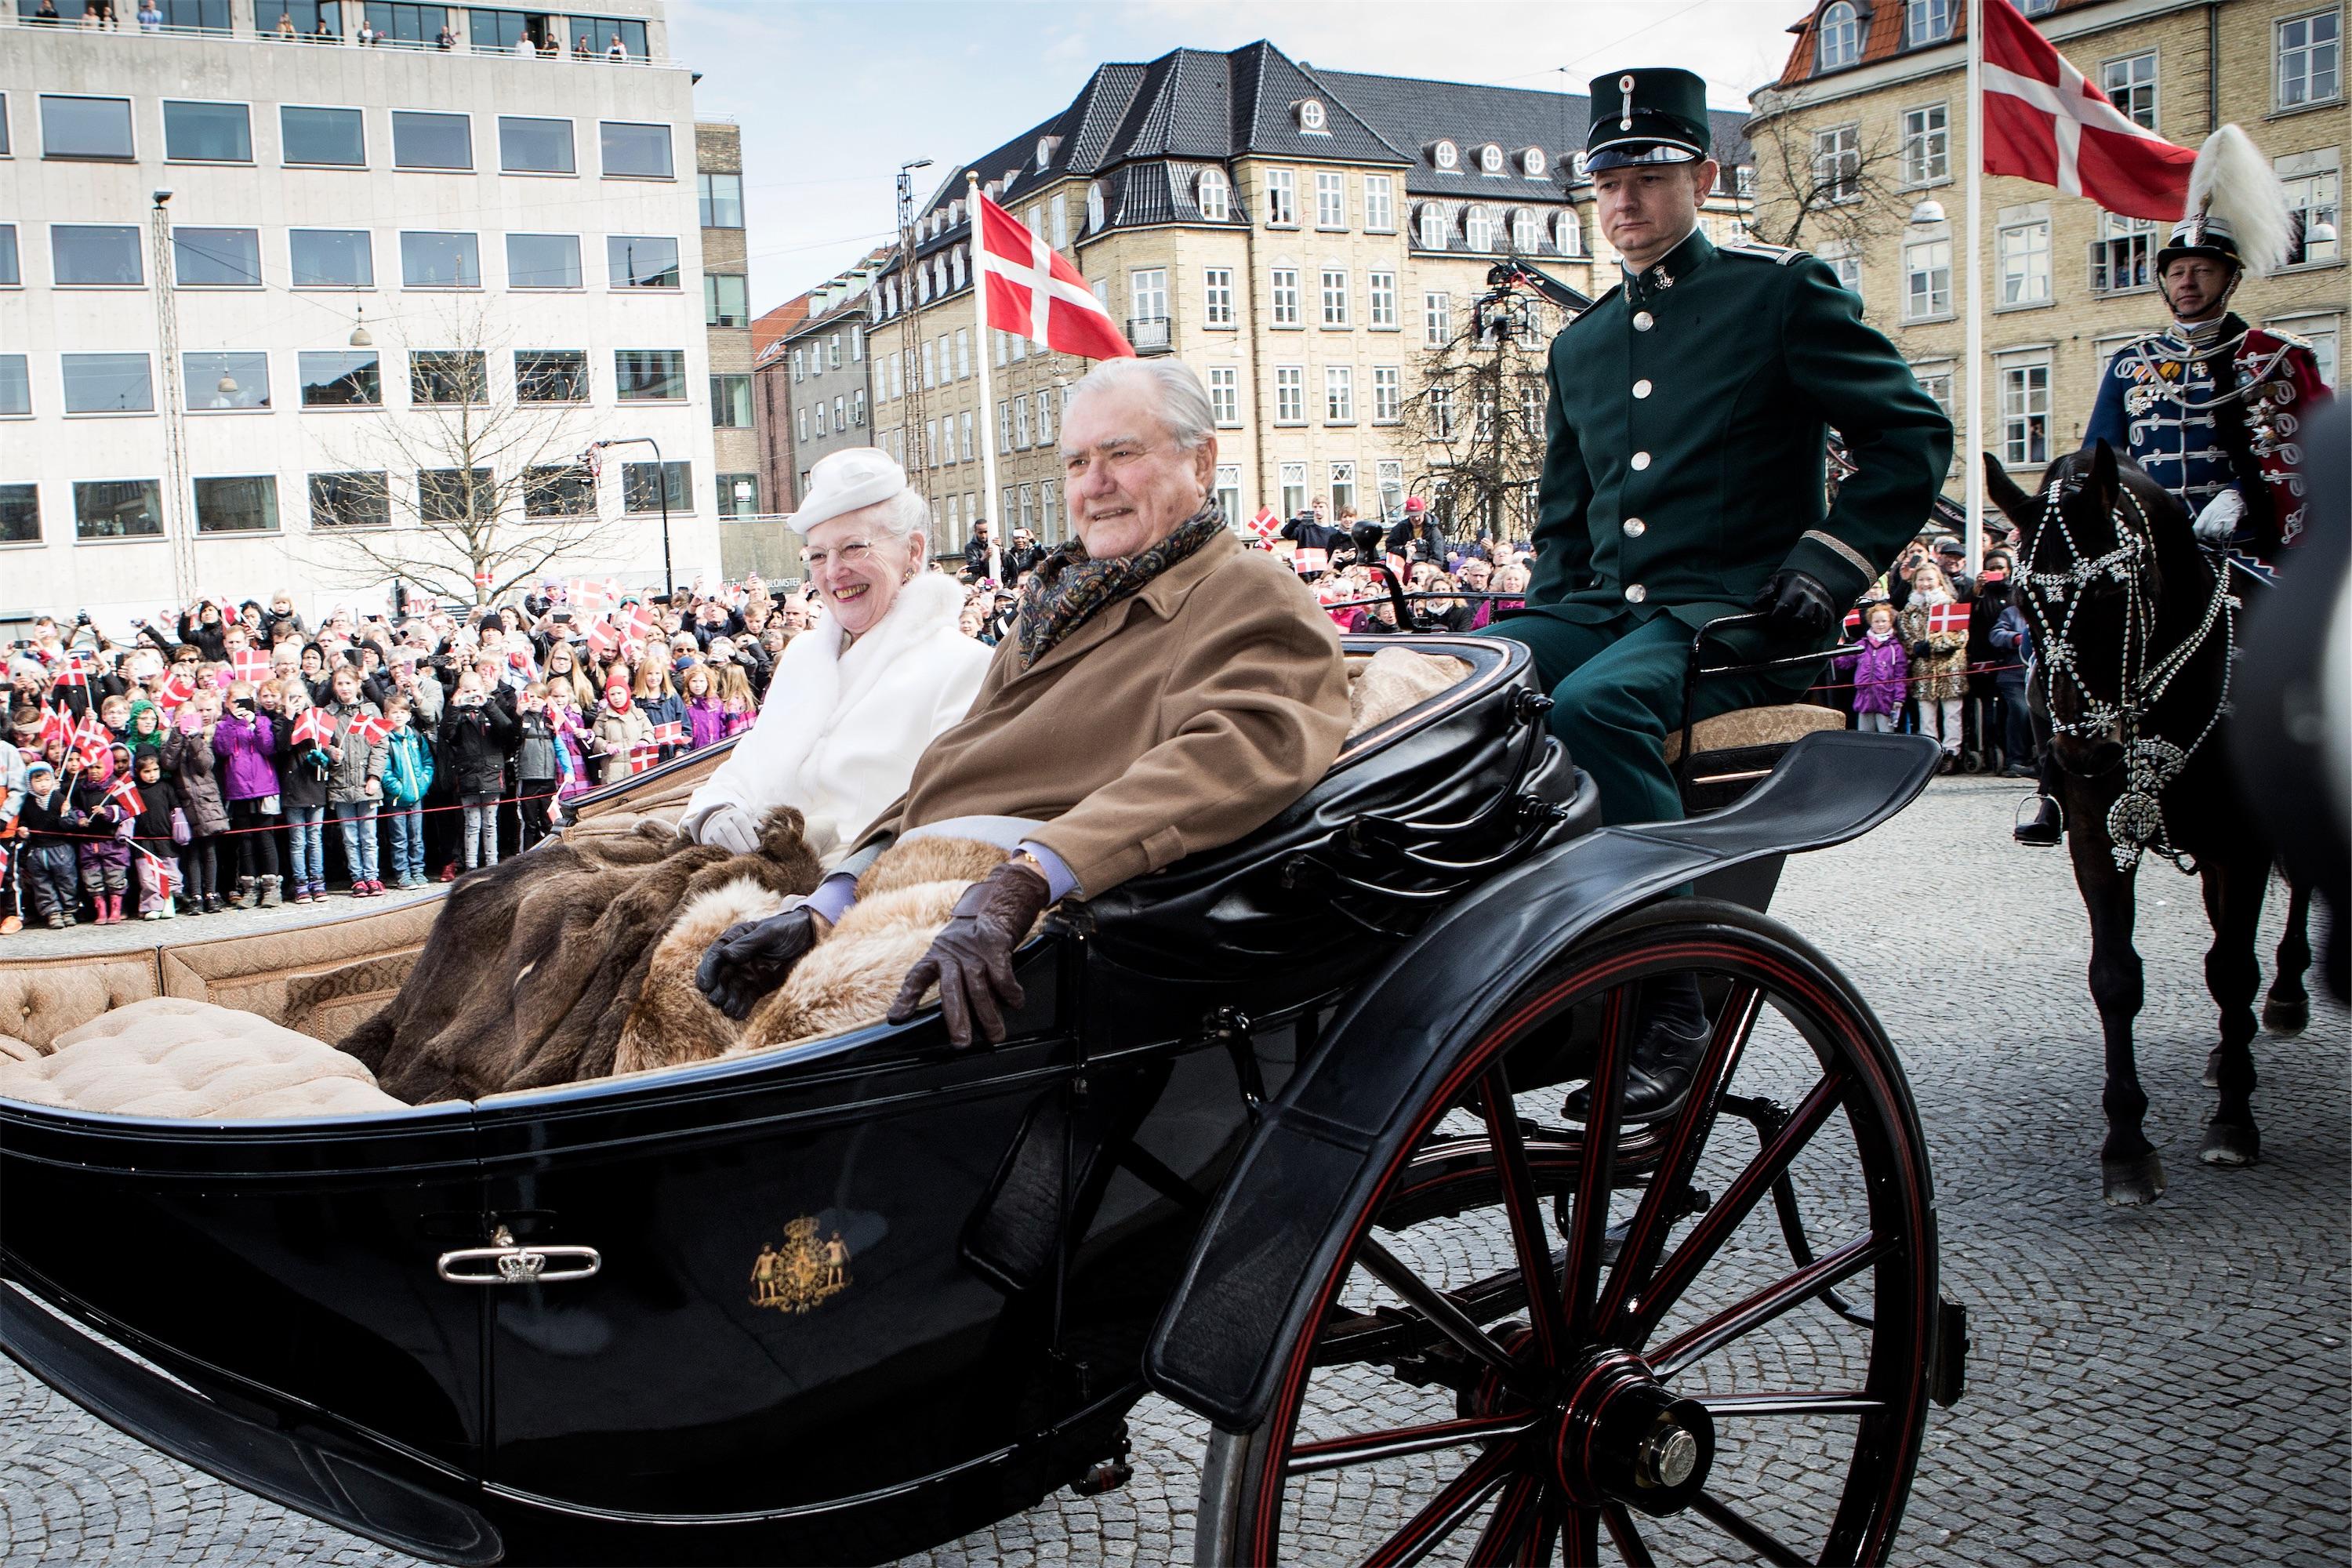 Regentparret ankom onsdag formiddag til Aarhus Rådhus, da Aarhus tog hul på dronningens 75-års-fødselsdag med karettur. Foto: Casper Dalhoff/Polfoto